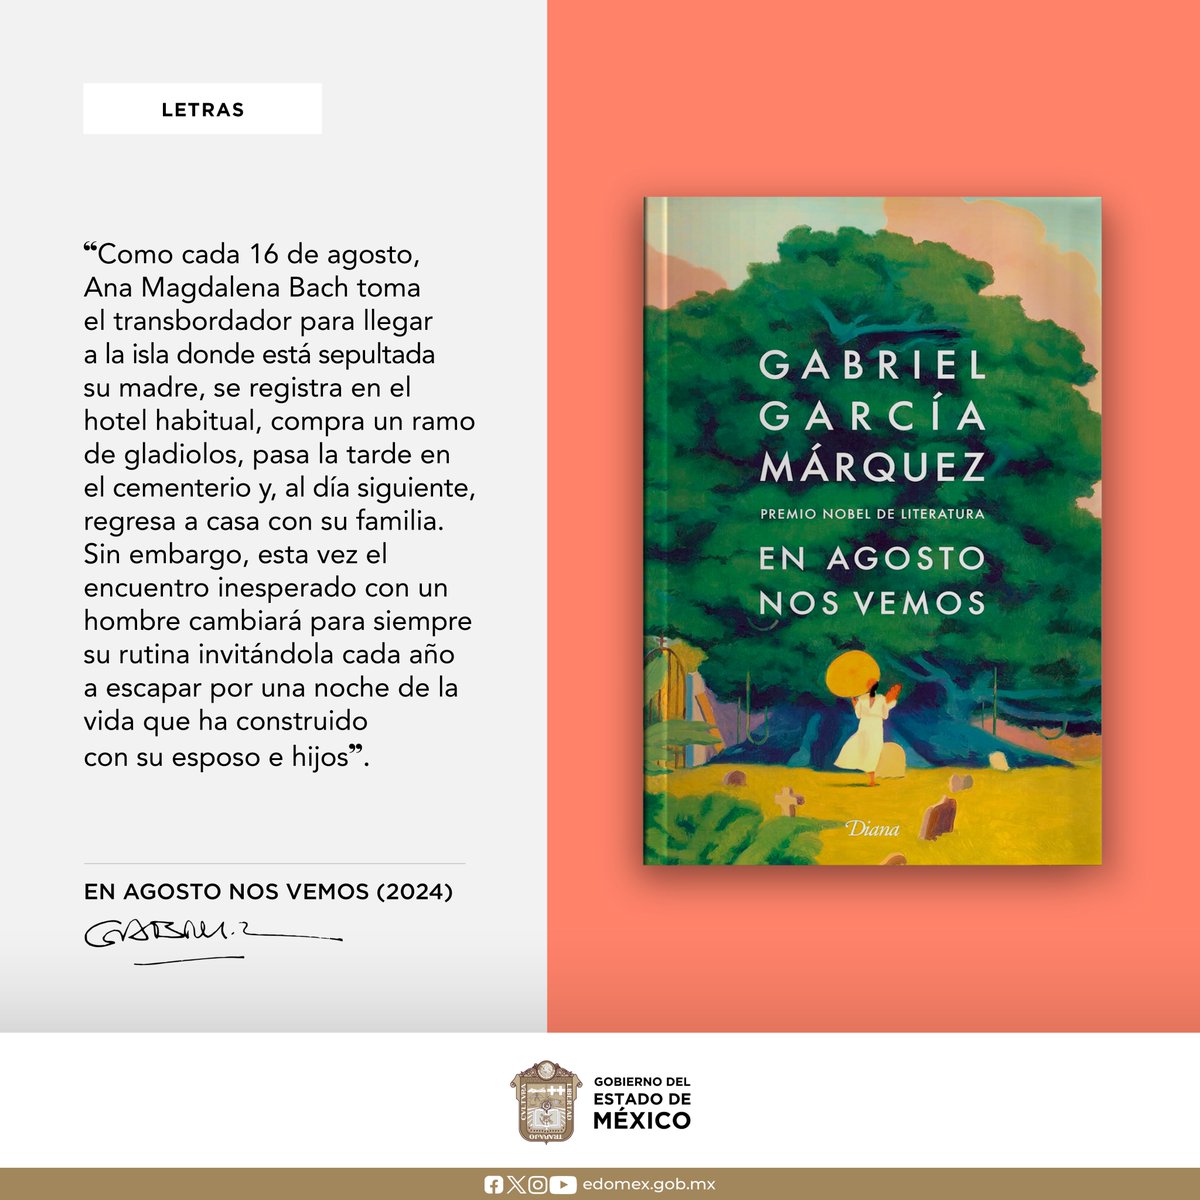 #GabrielGarcíaMárquez murió el 17 de abril de 2014 en la #CDMX, por lo que el aniversario de este año coincide con la publicación de #EnAgostoNosVemos, novela inédita en la que trabajó los últimos años de su vida y qué había pedido que la destruyeran. #Letras #Literatura #AGEMÉX